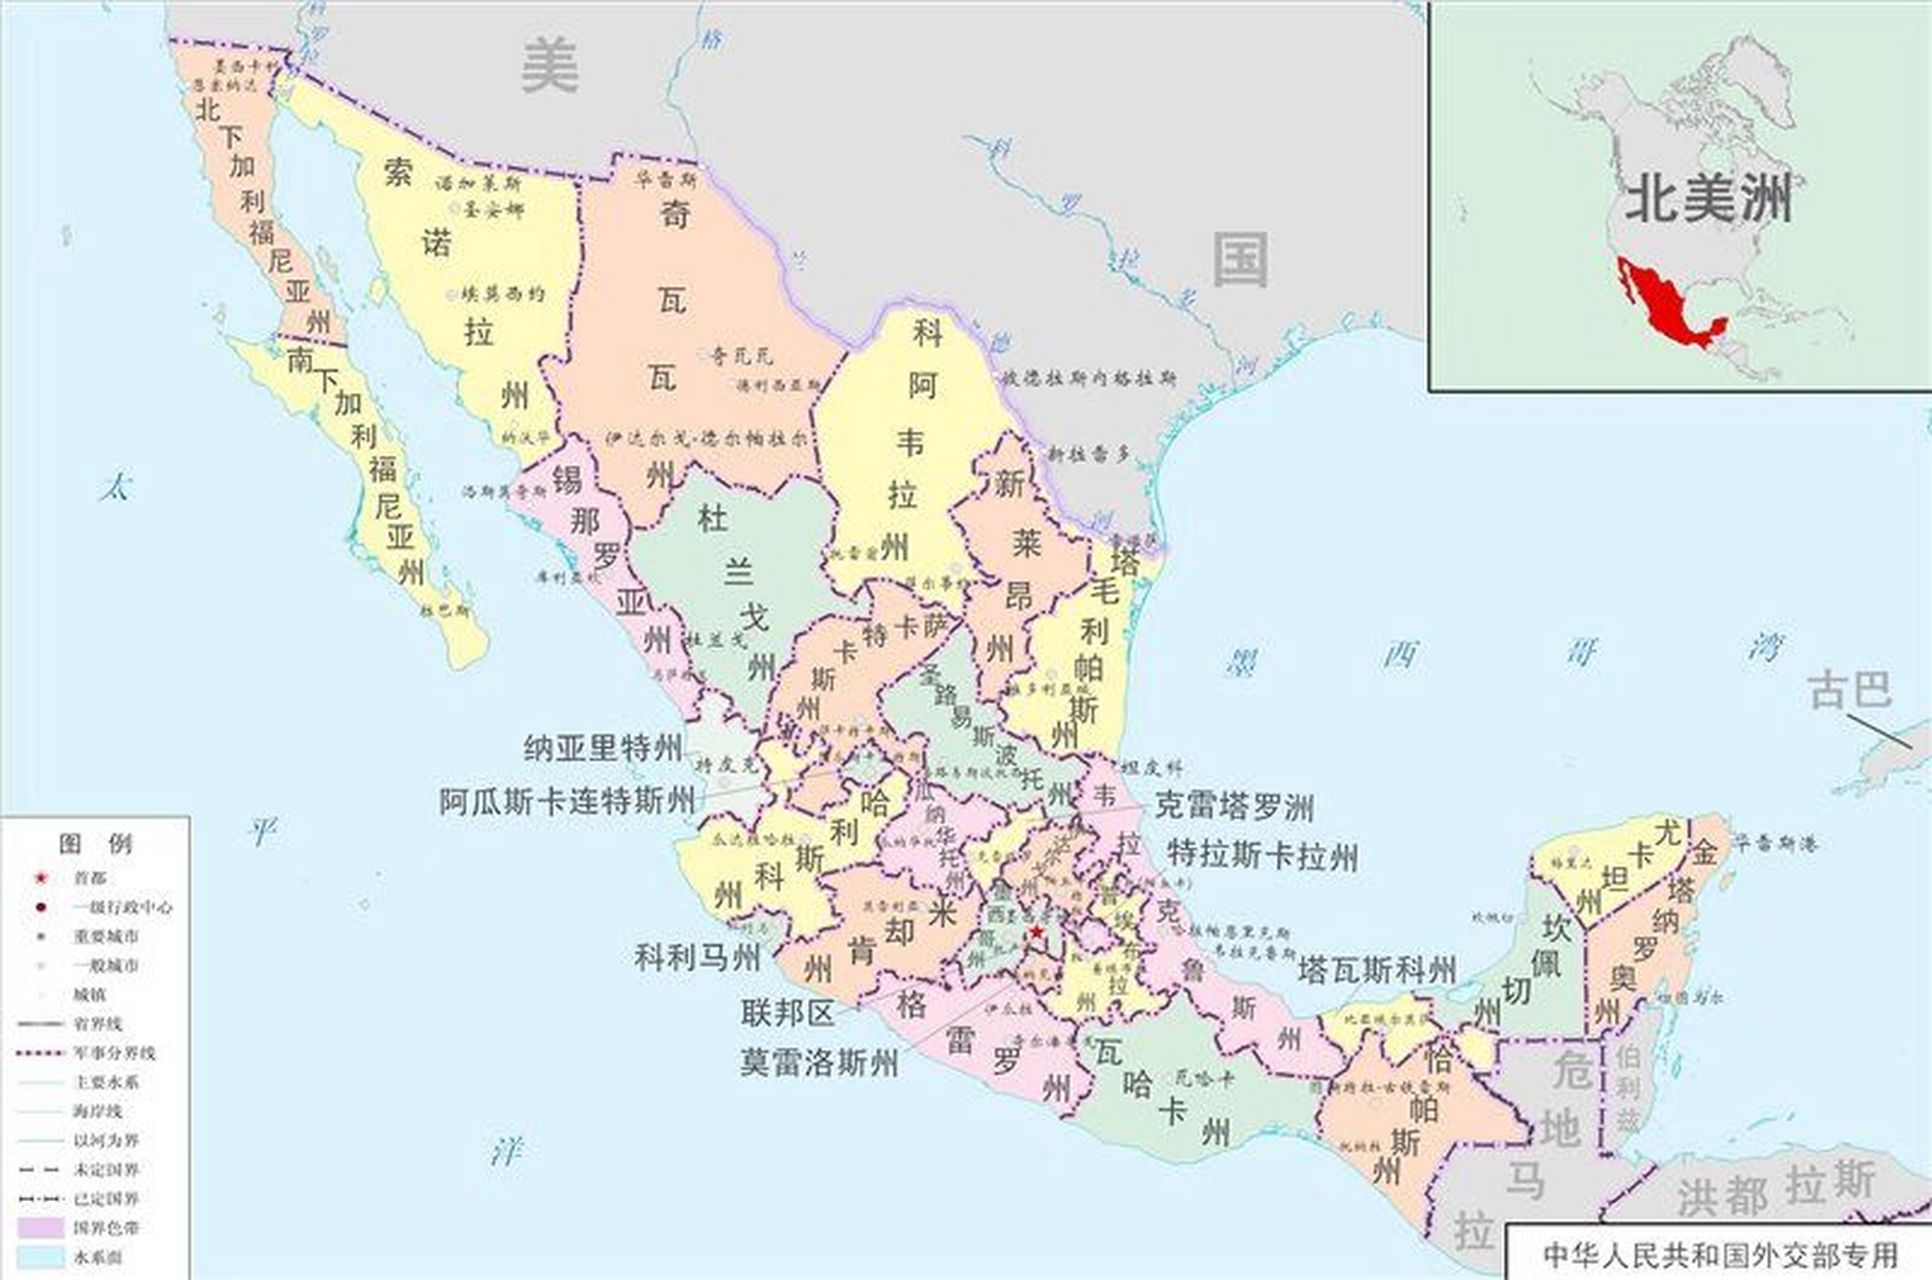 墨西哥地理概况图解90159899    墨西哥9899是一个自由